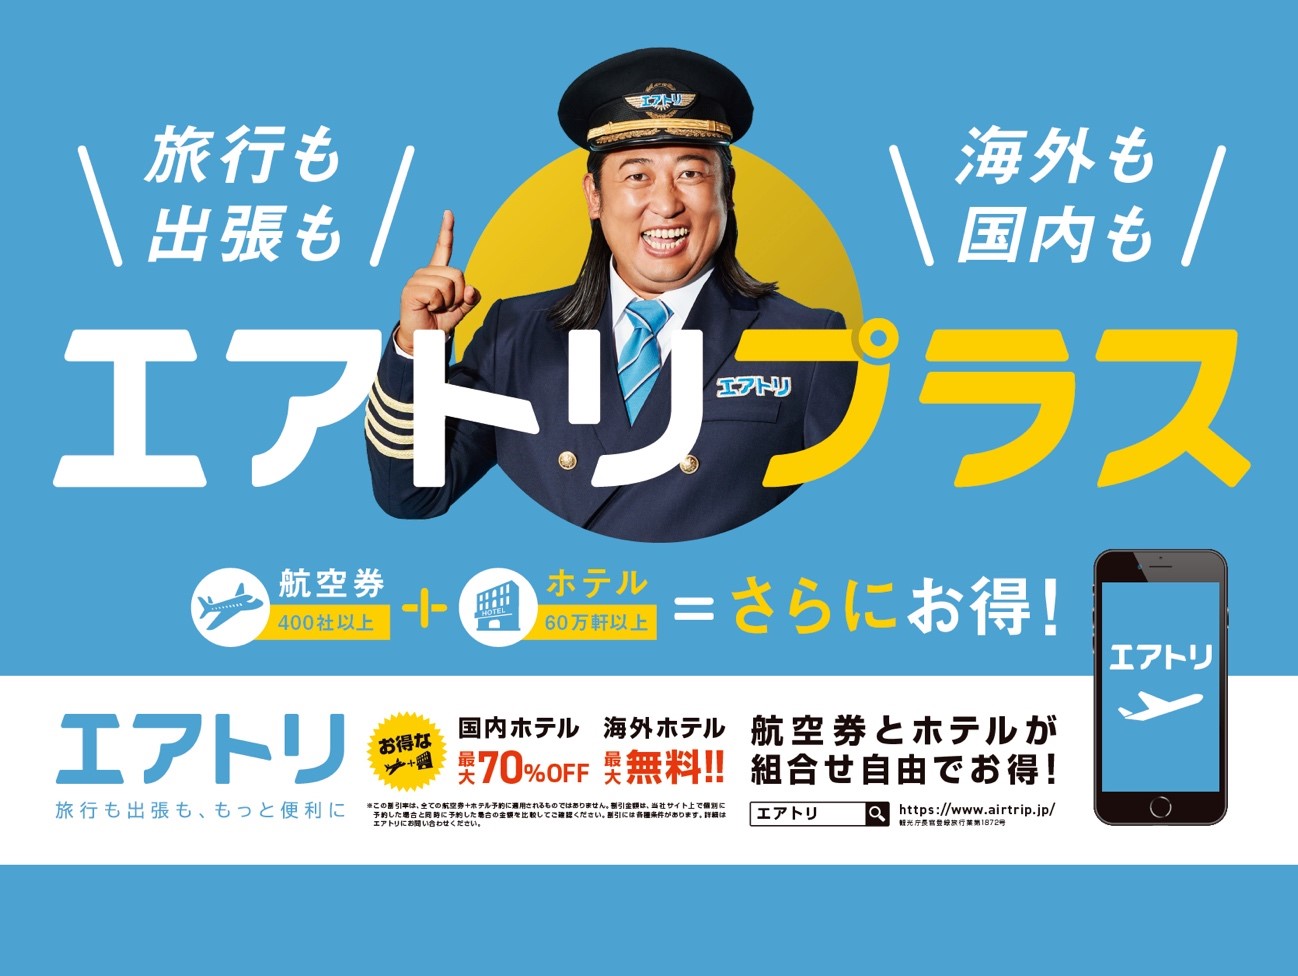 1月11日(土)より京急電鉄・品川駅にて「エアトリプラス」を訴求した巨大看板広告を掲出開始